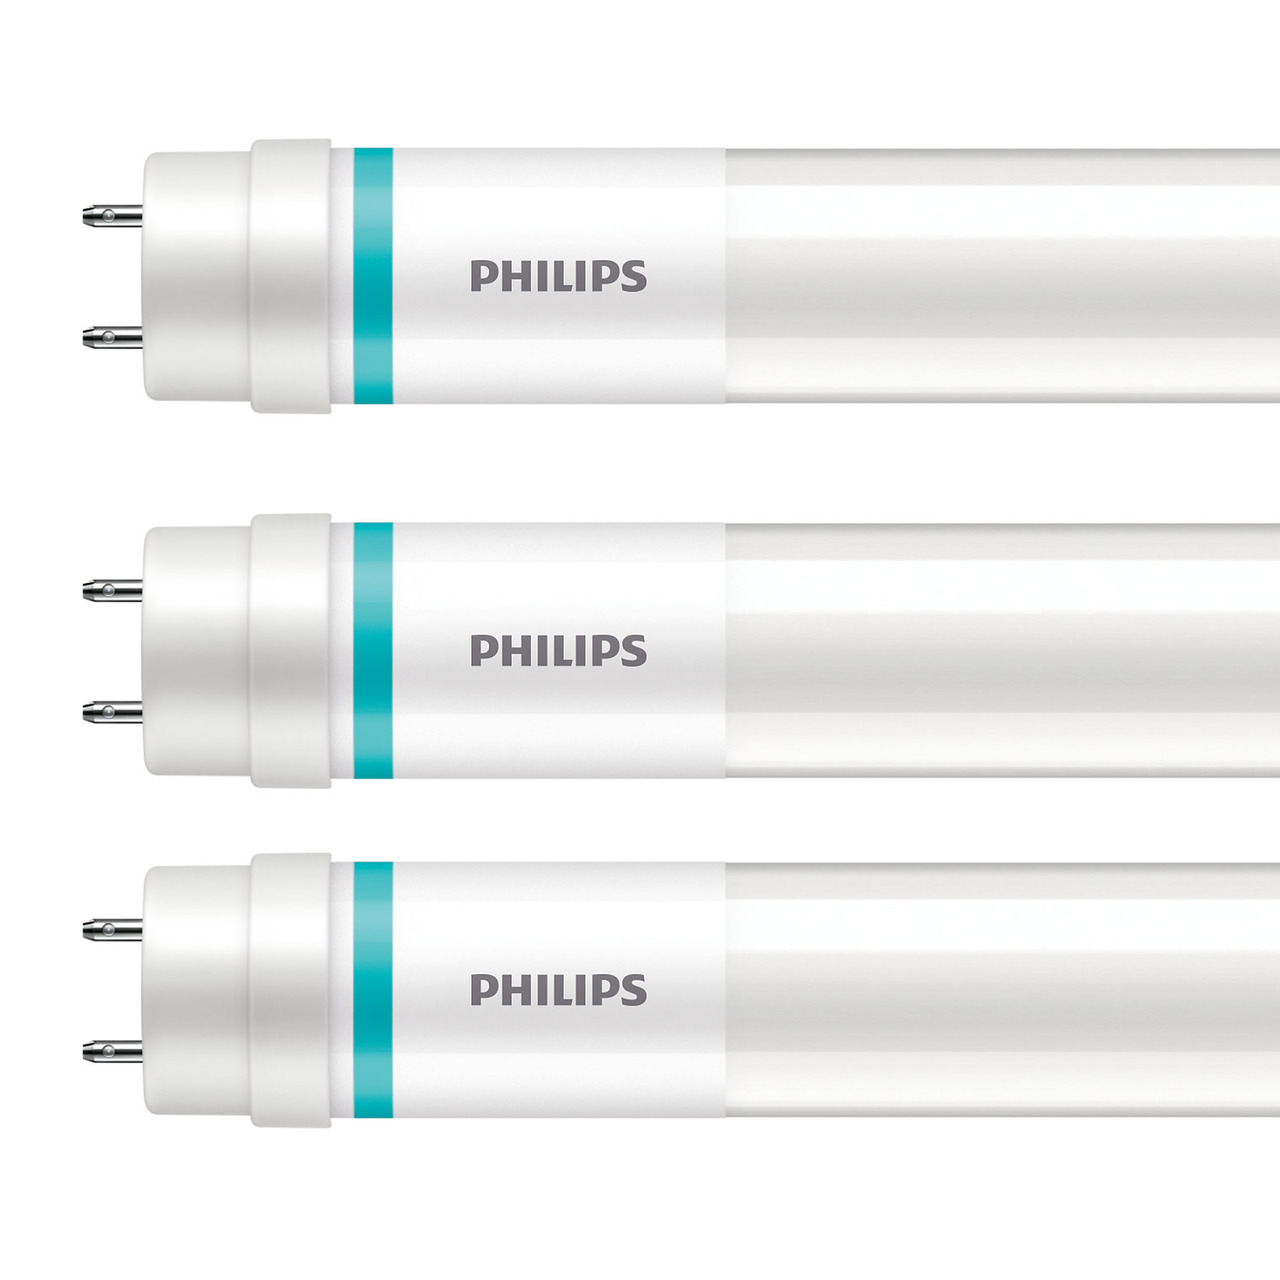 Philips 3er-Set 15-5-W-T8-LED-Rhrenlampe LEDtube UO- 2500 lm- kaltweiss- KVG-VVG- 120 cm unter Beleuchtung